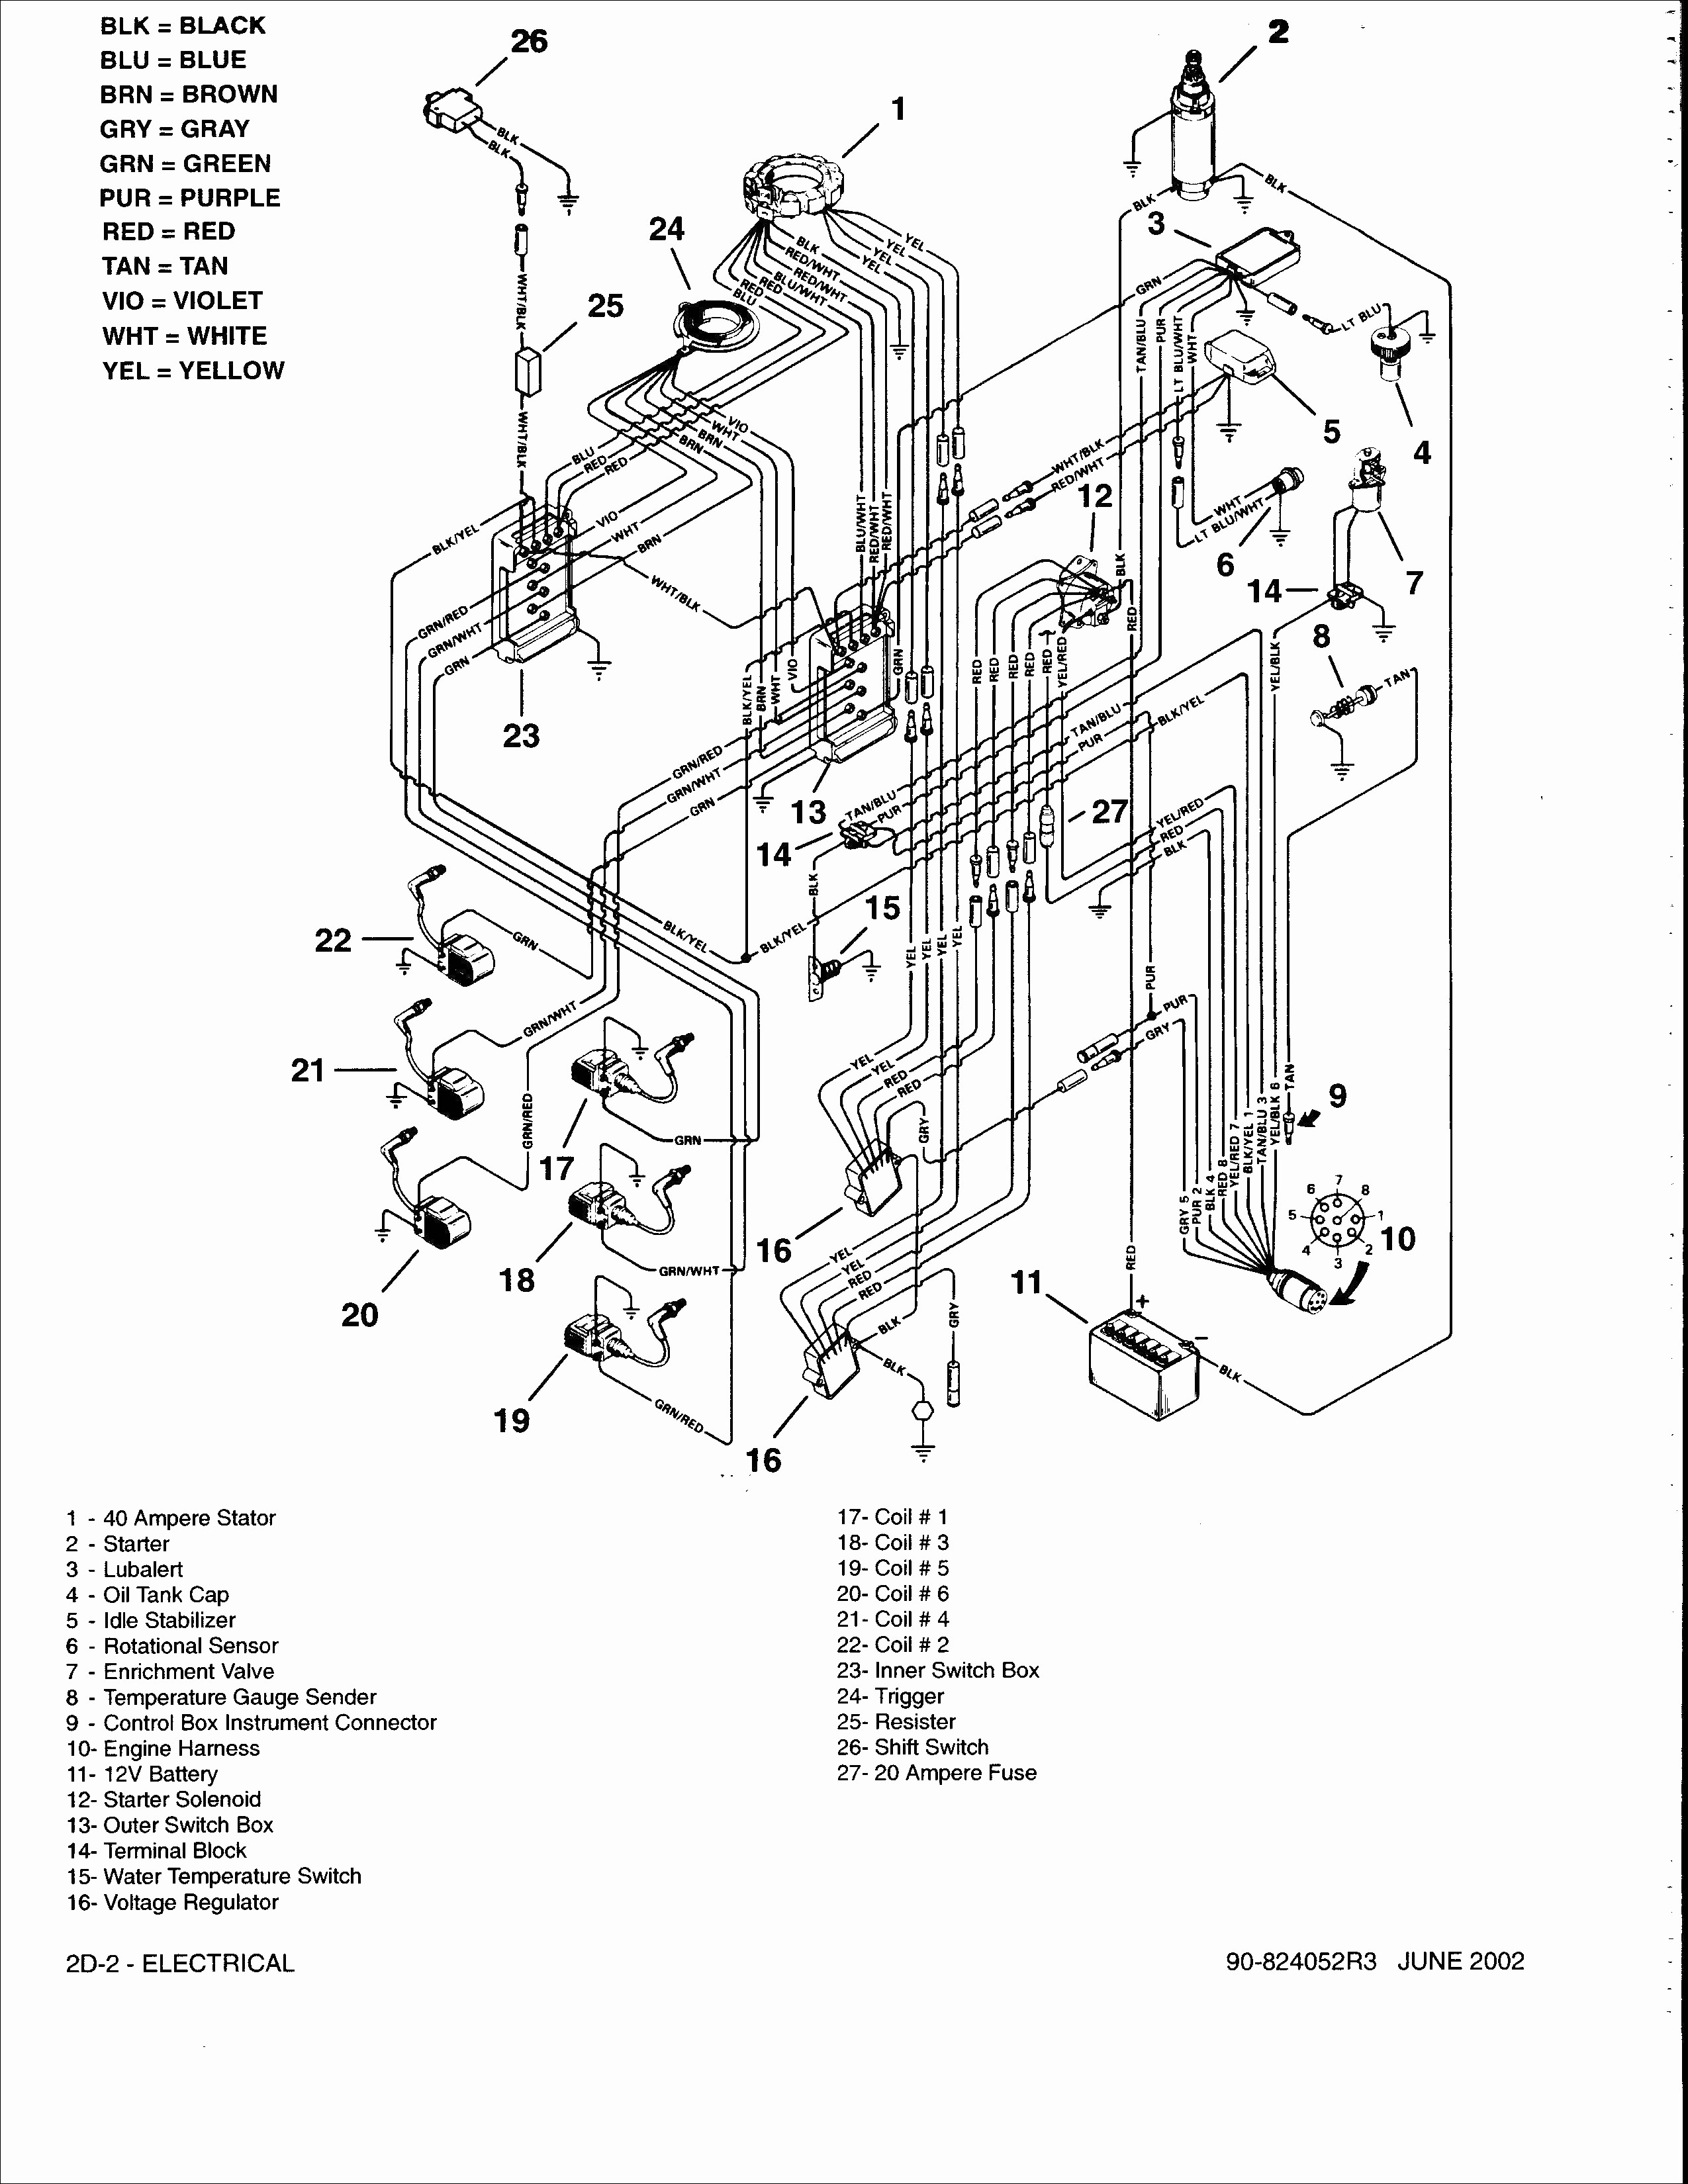 Motor Starter Wiring Diagram Luxury Reversing solenoid Wiring Diagram Awesome Wiring Diagram Cutler Motor Starter